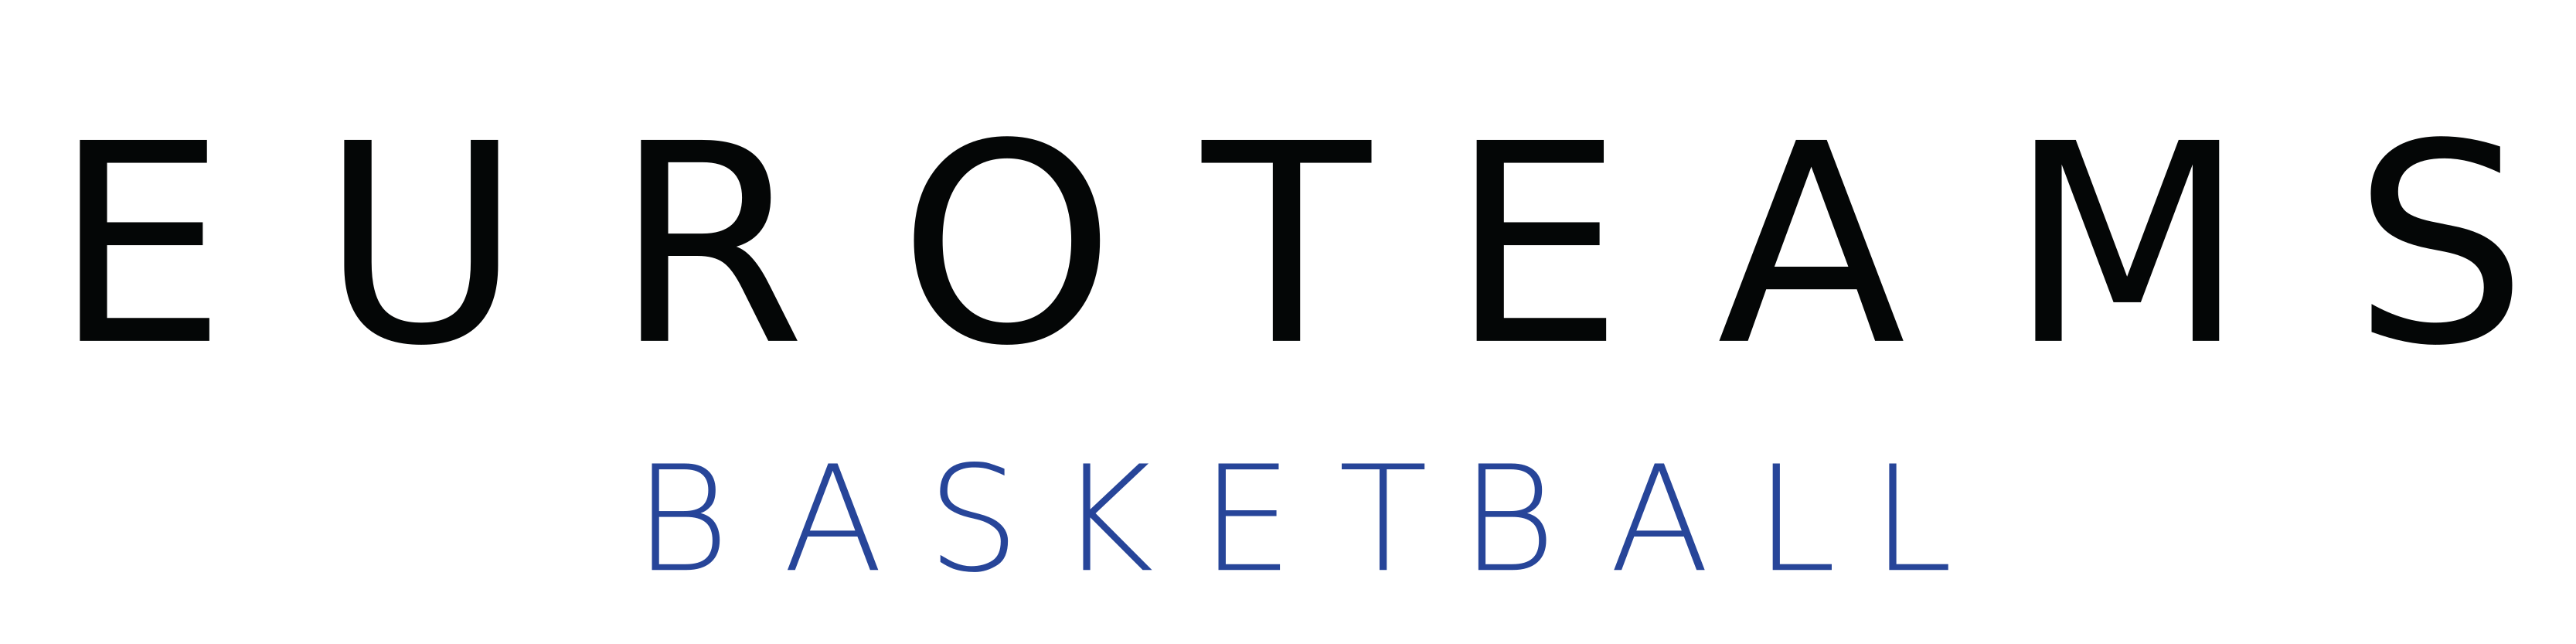 EuroTeams Basketball